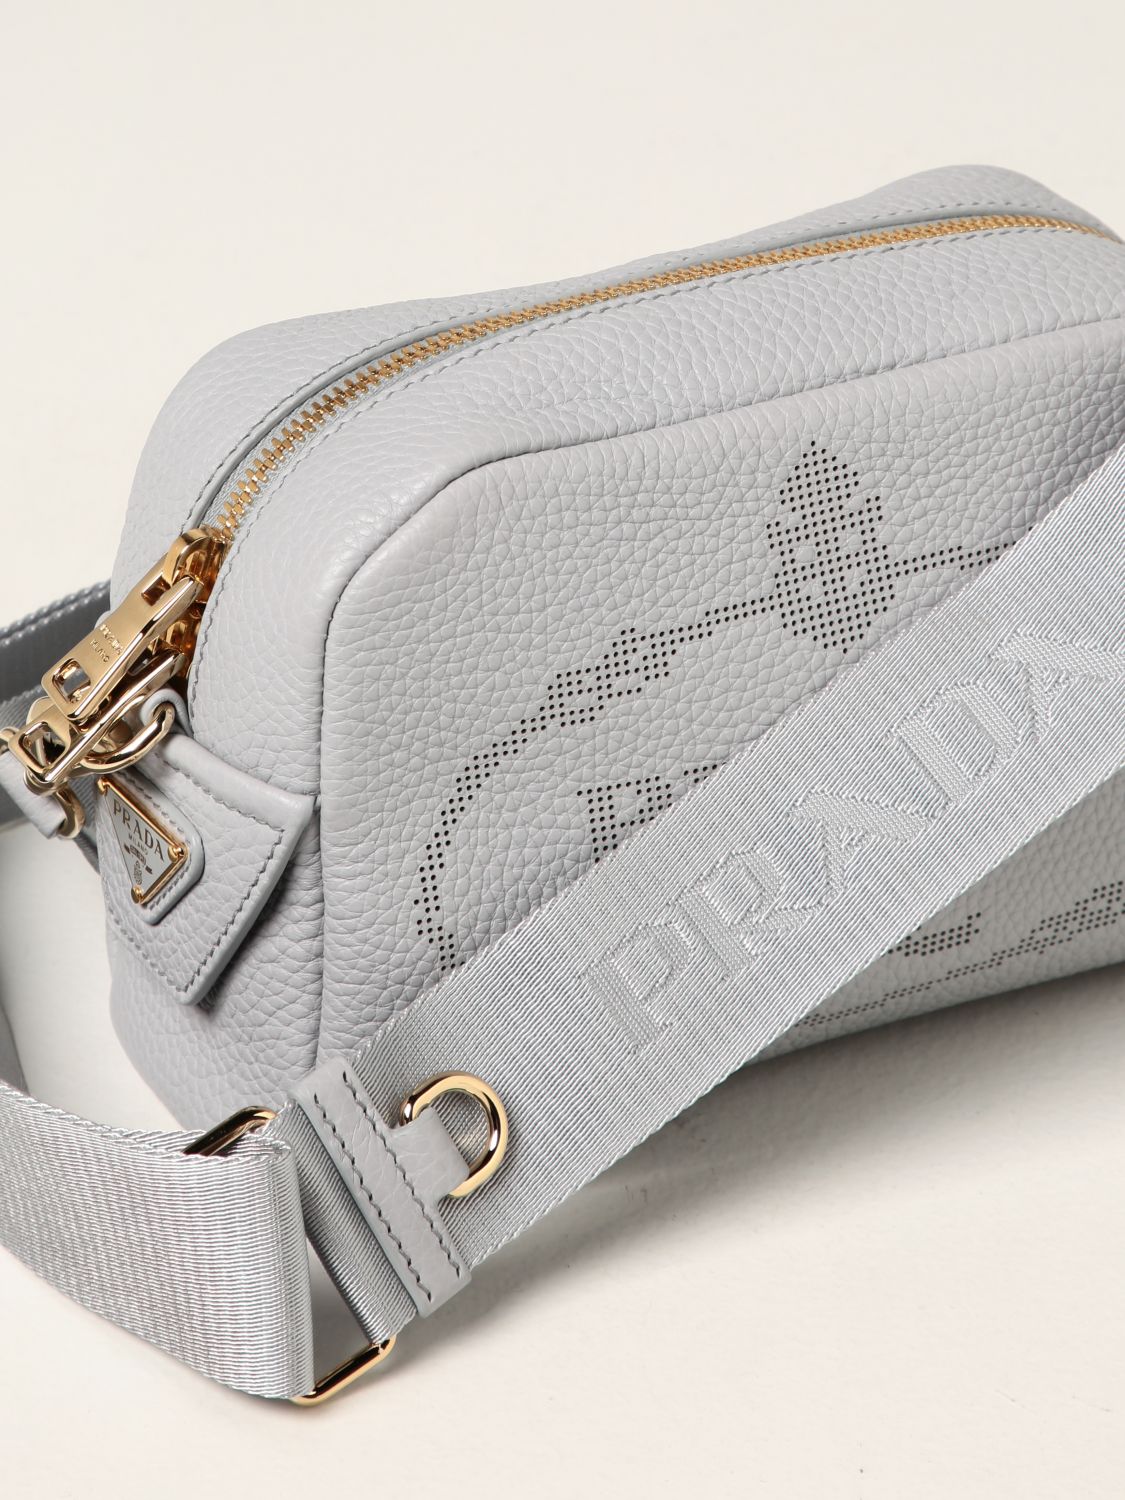 Mini bolso Prada: Bolso Prada en piel texturizada perla 4